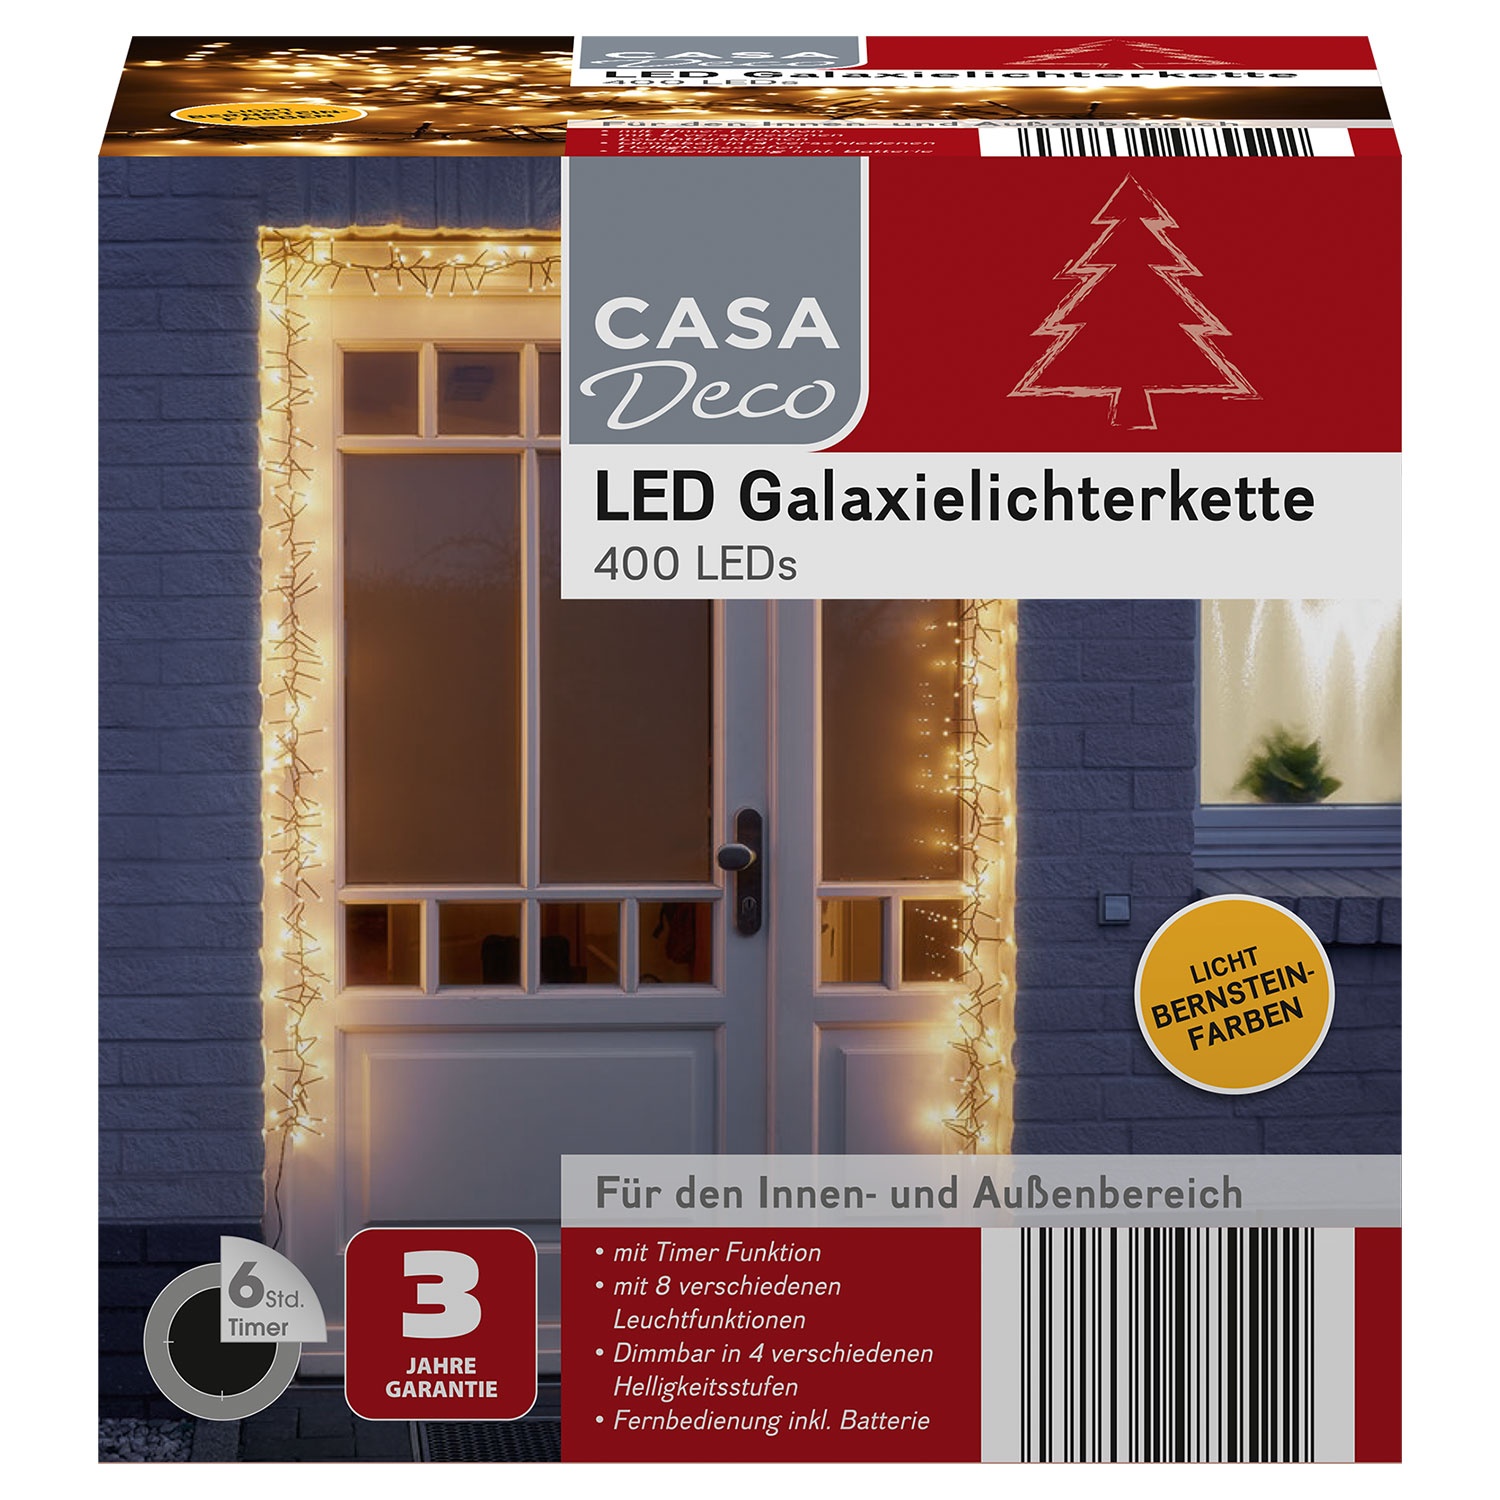 CASA DECO LED-Galaxie-Lichterkette mit 400 LEDs